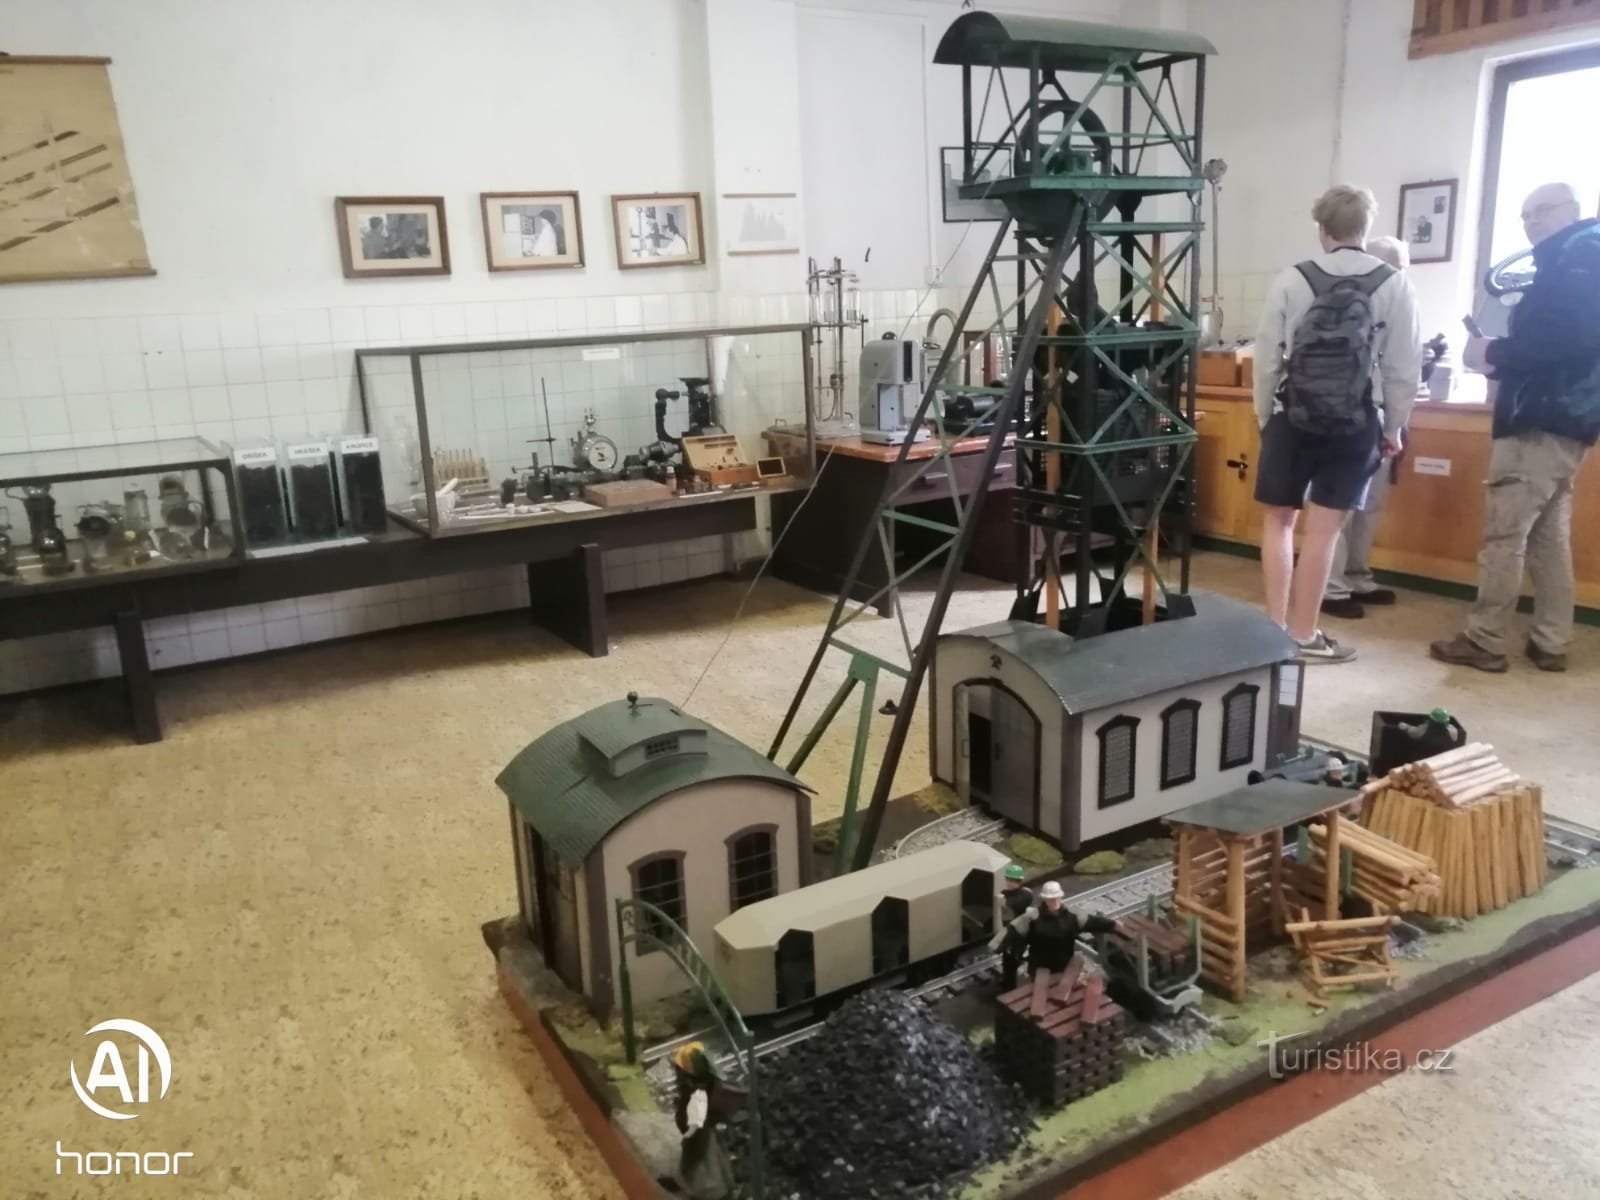 Museo minero al aire libre Mayrau